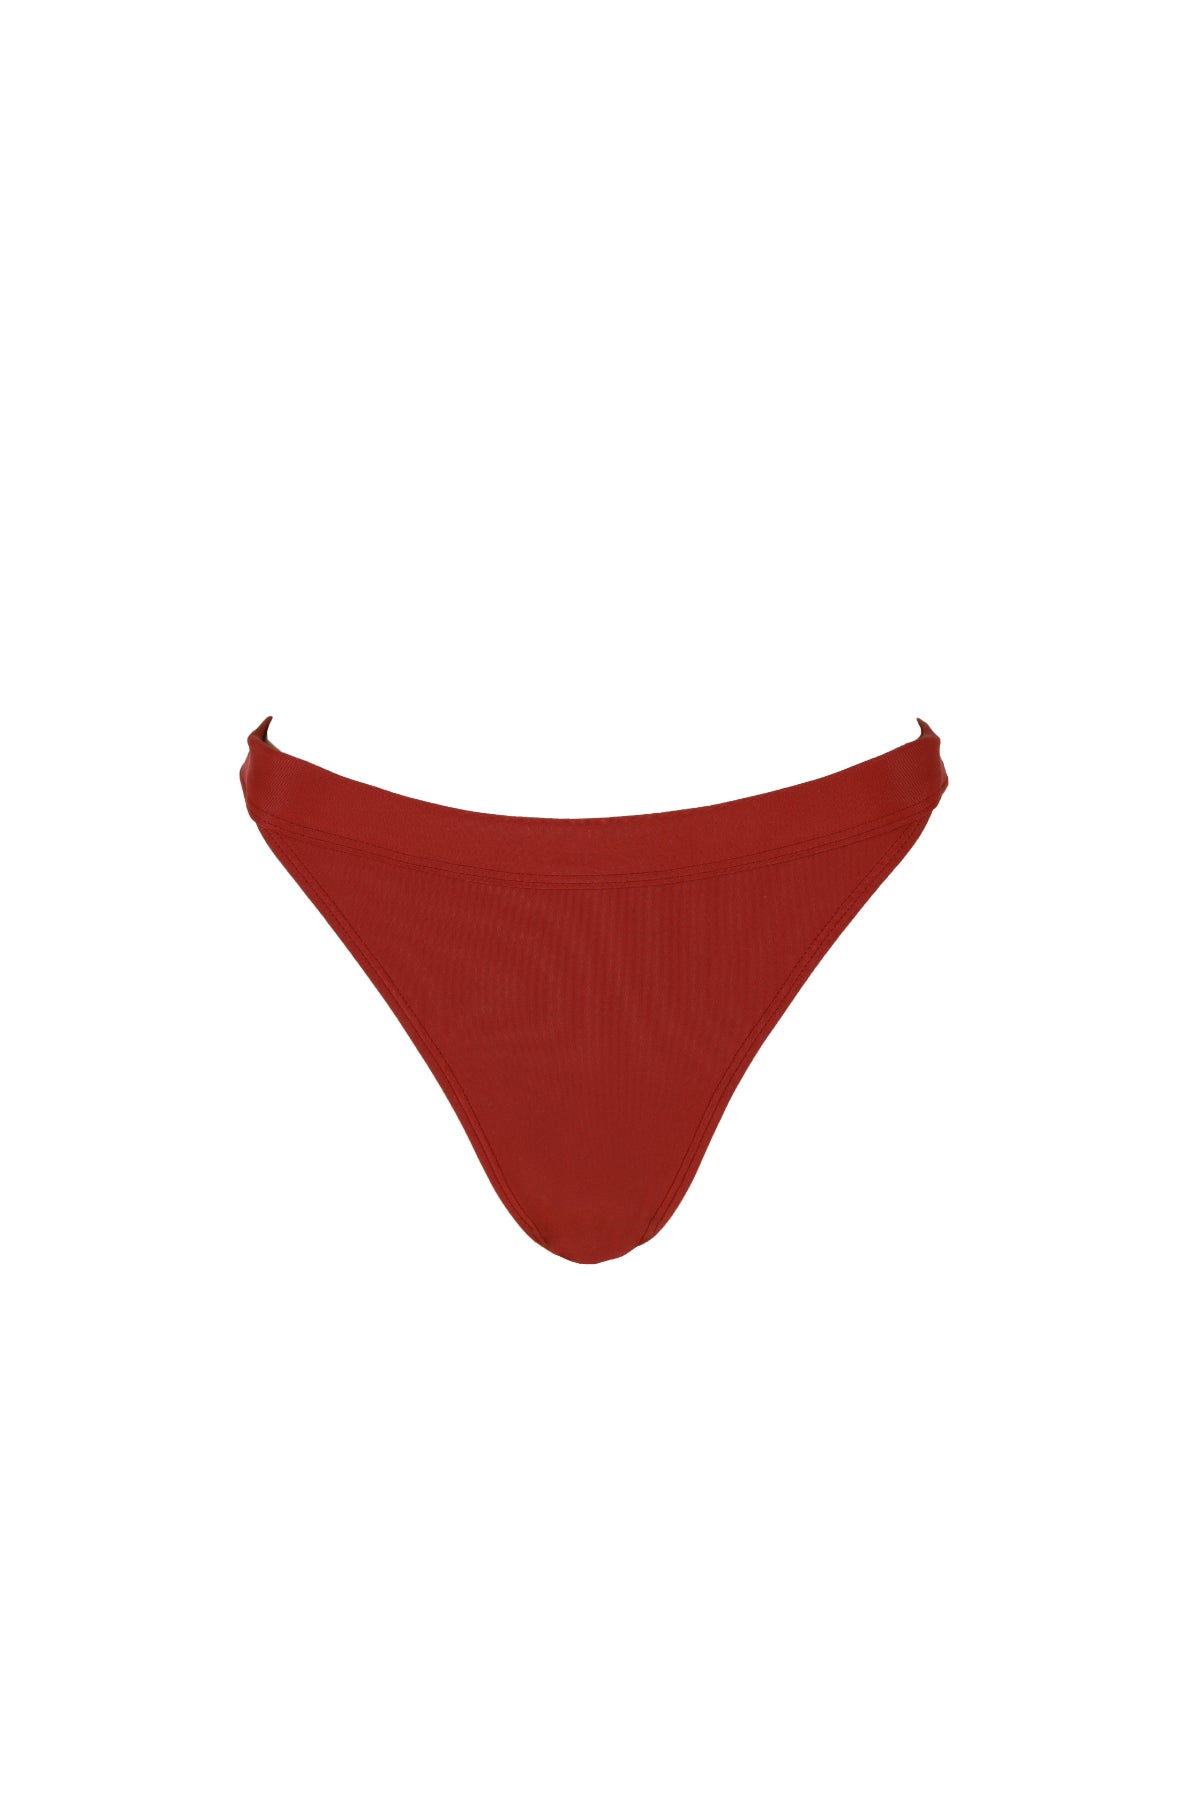 Hedy mid rise bikini bottoms in burgundy from luxury sustainable swimwear brand Koraru